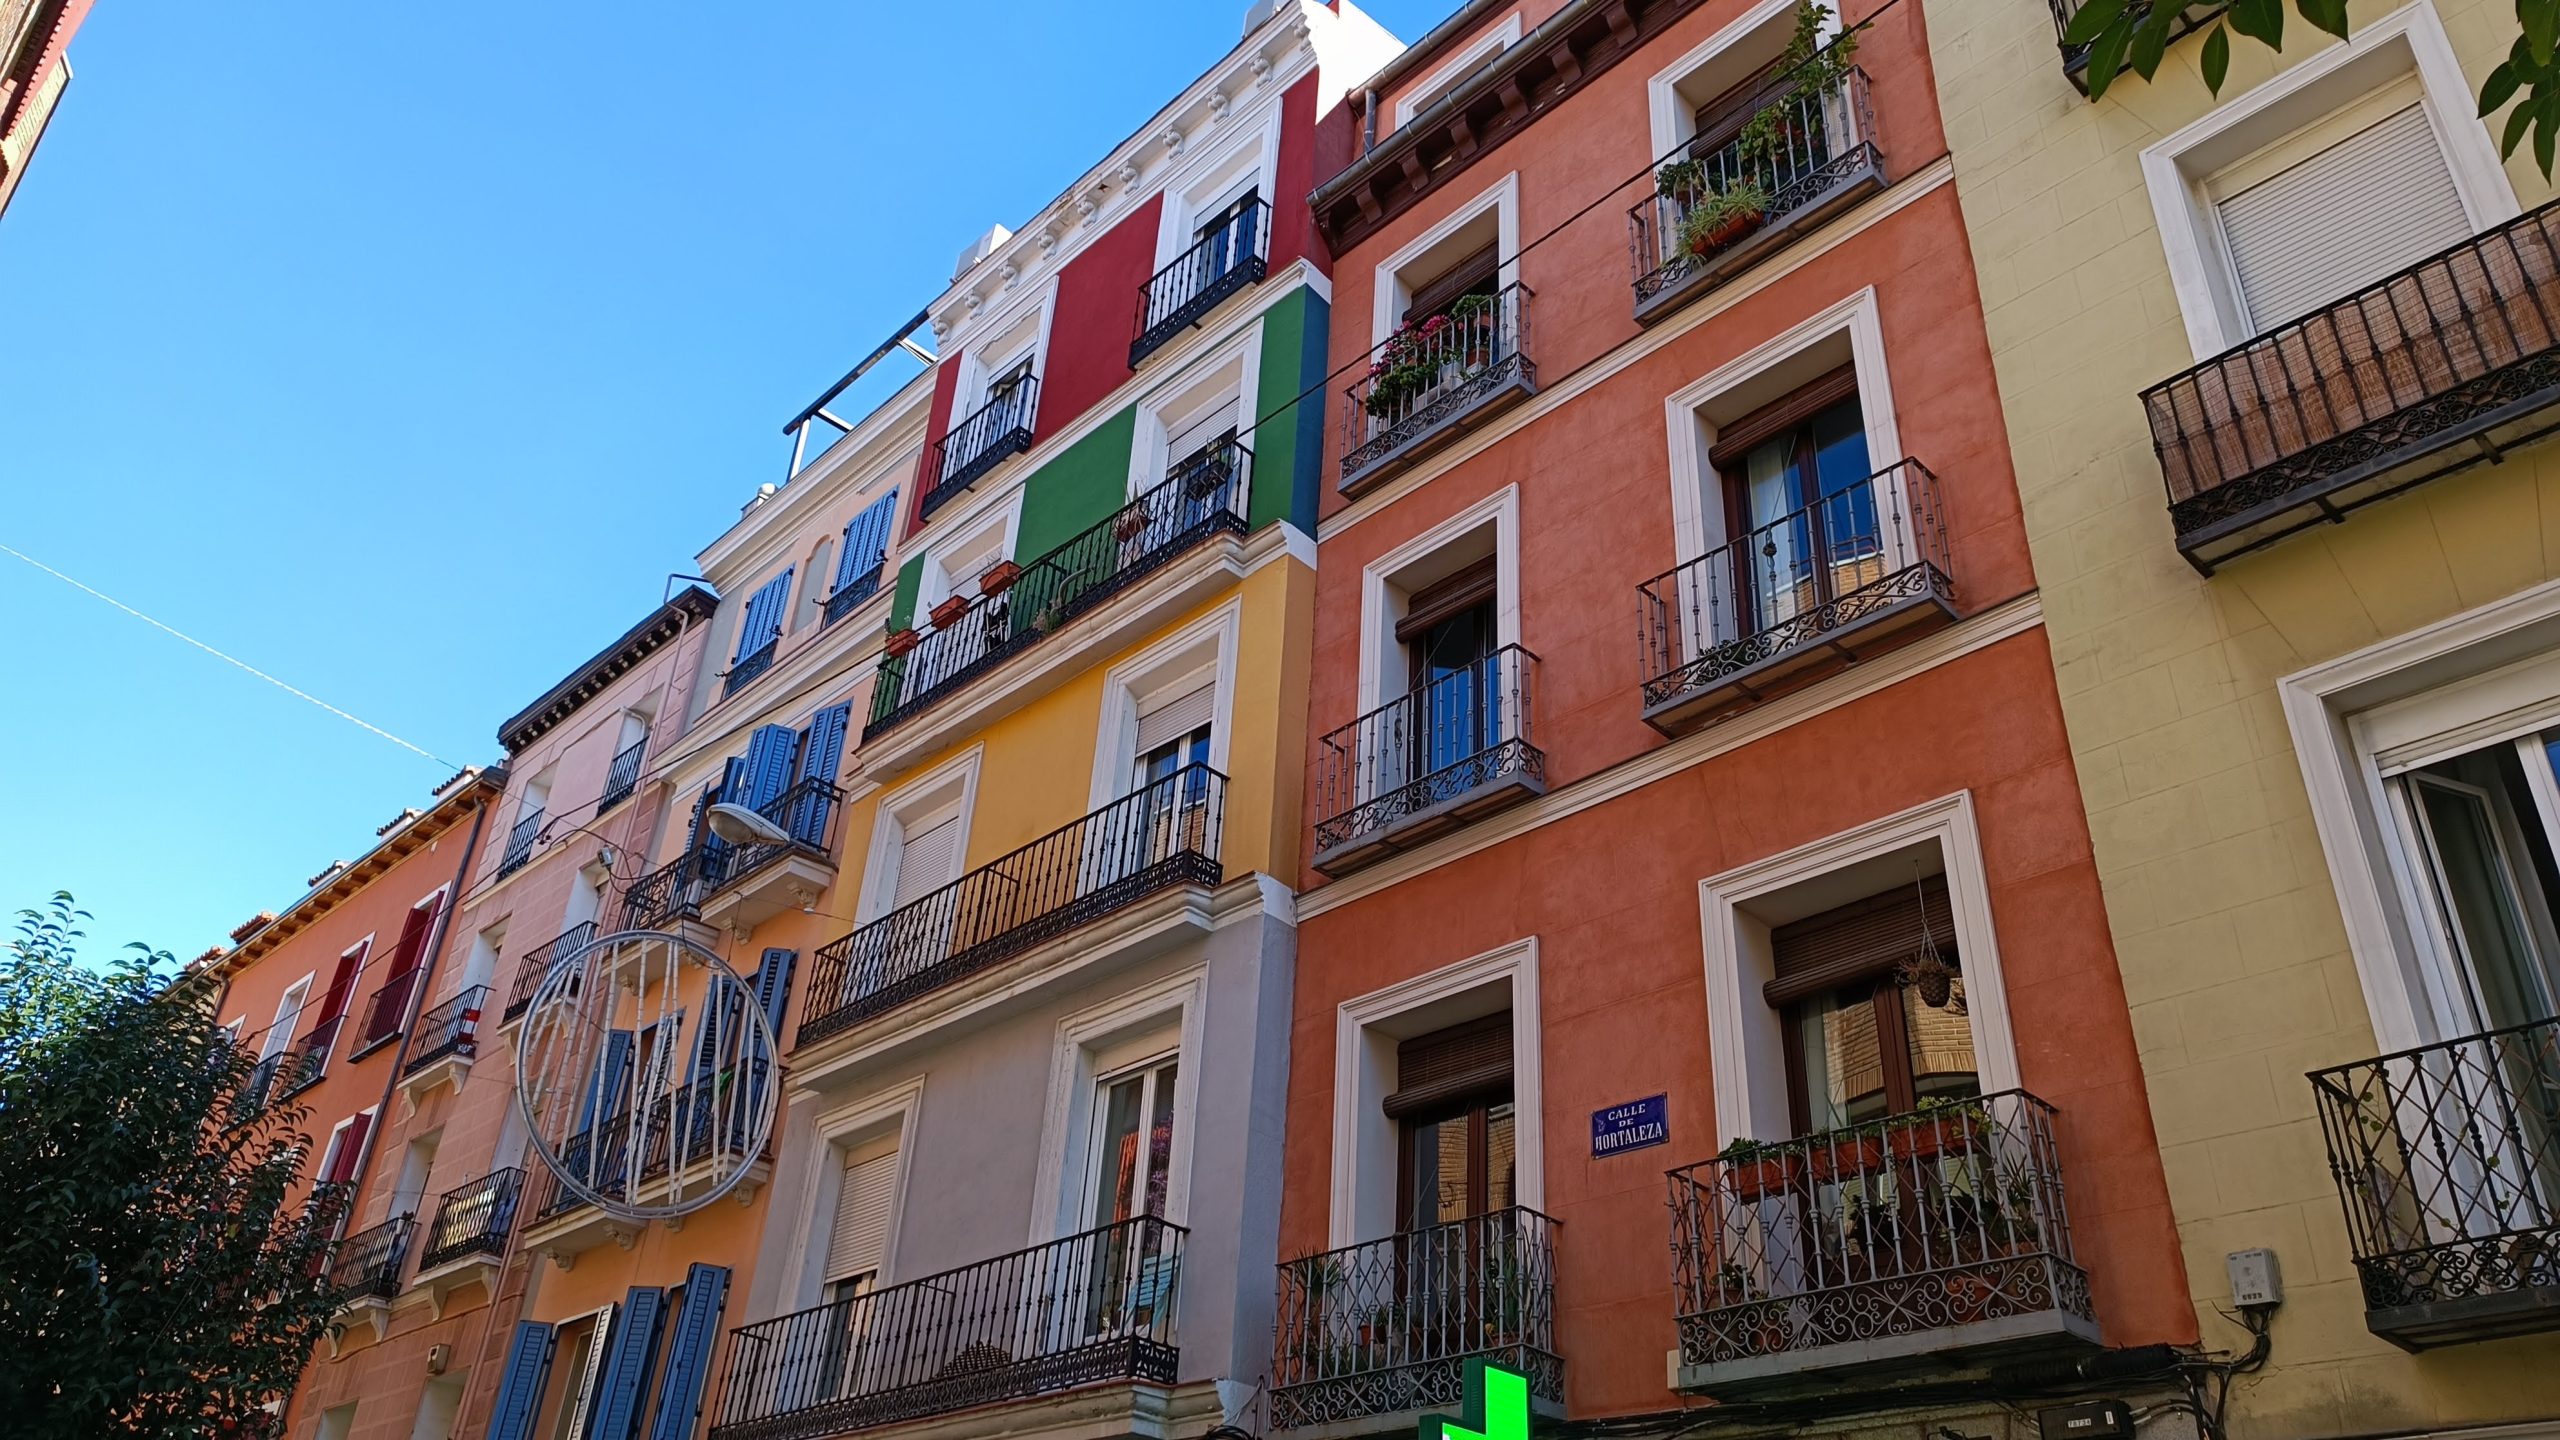 Situat al nord de Gran Via i a l'est de Malasaña, Chueca ha estat per dècades el barri gai de Madrid.